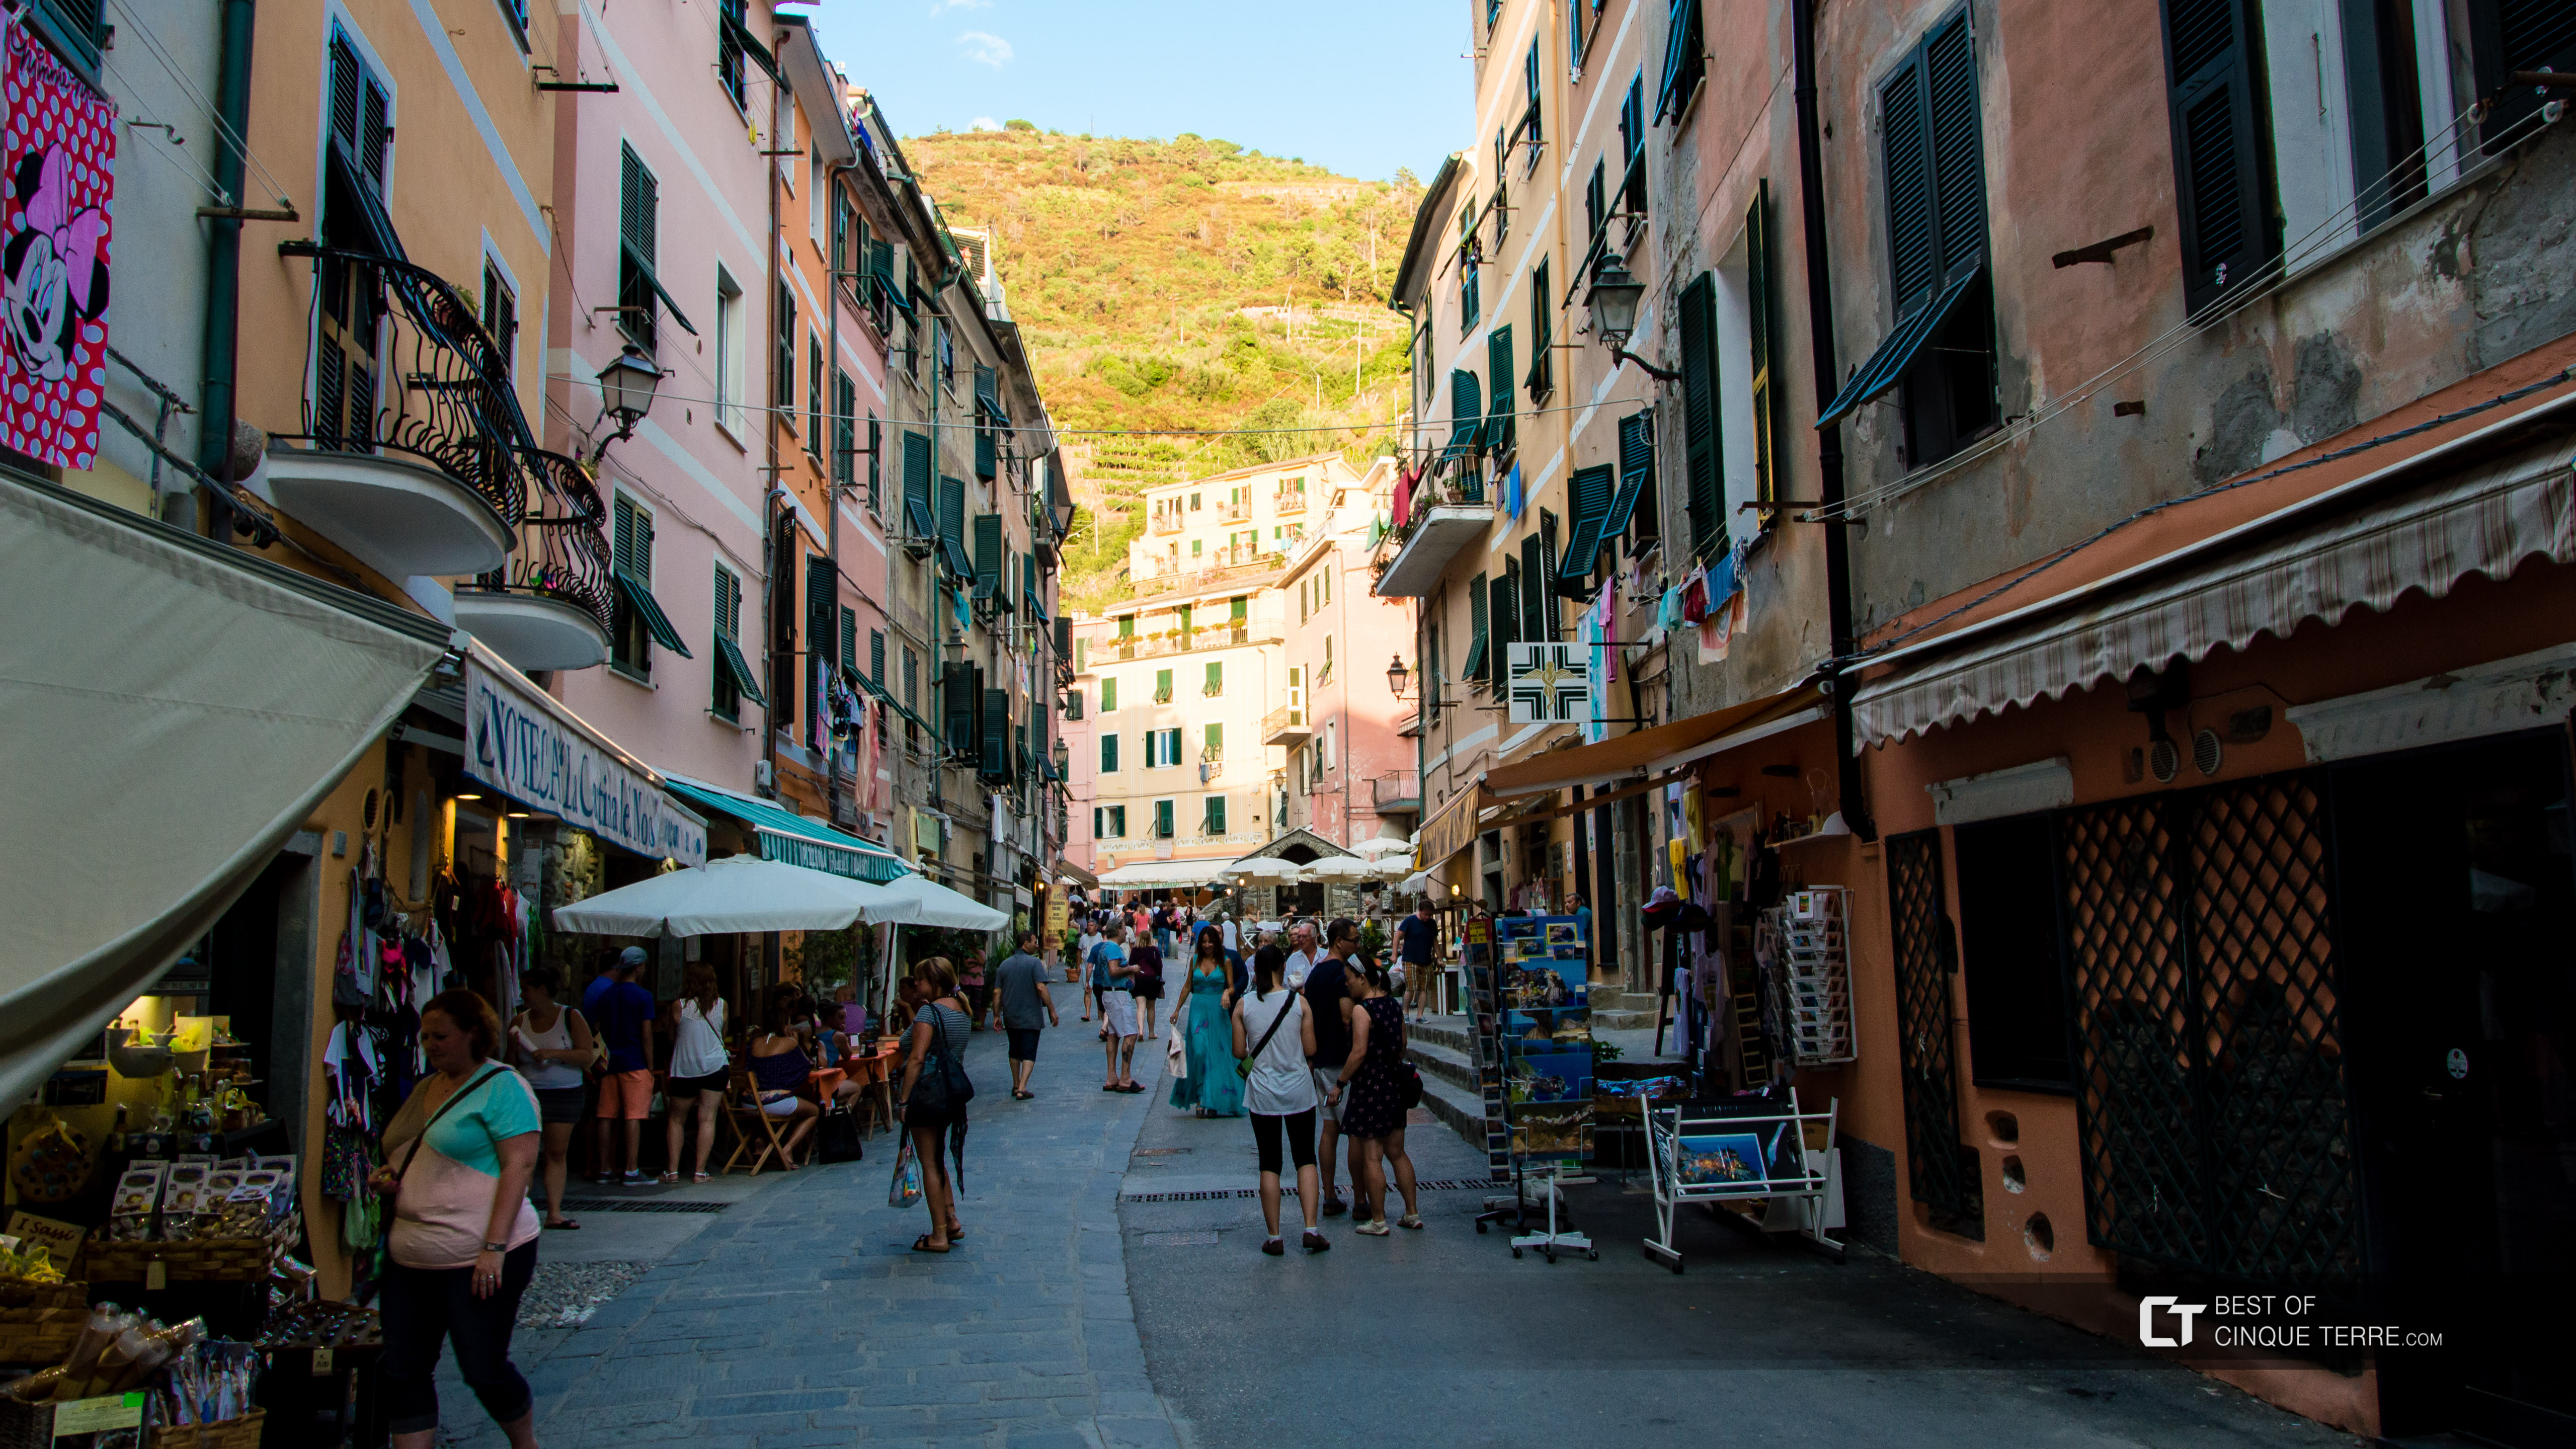 Plimbare pe strada centrală, Vernazza, Cinque Terre, Italia